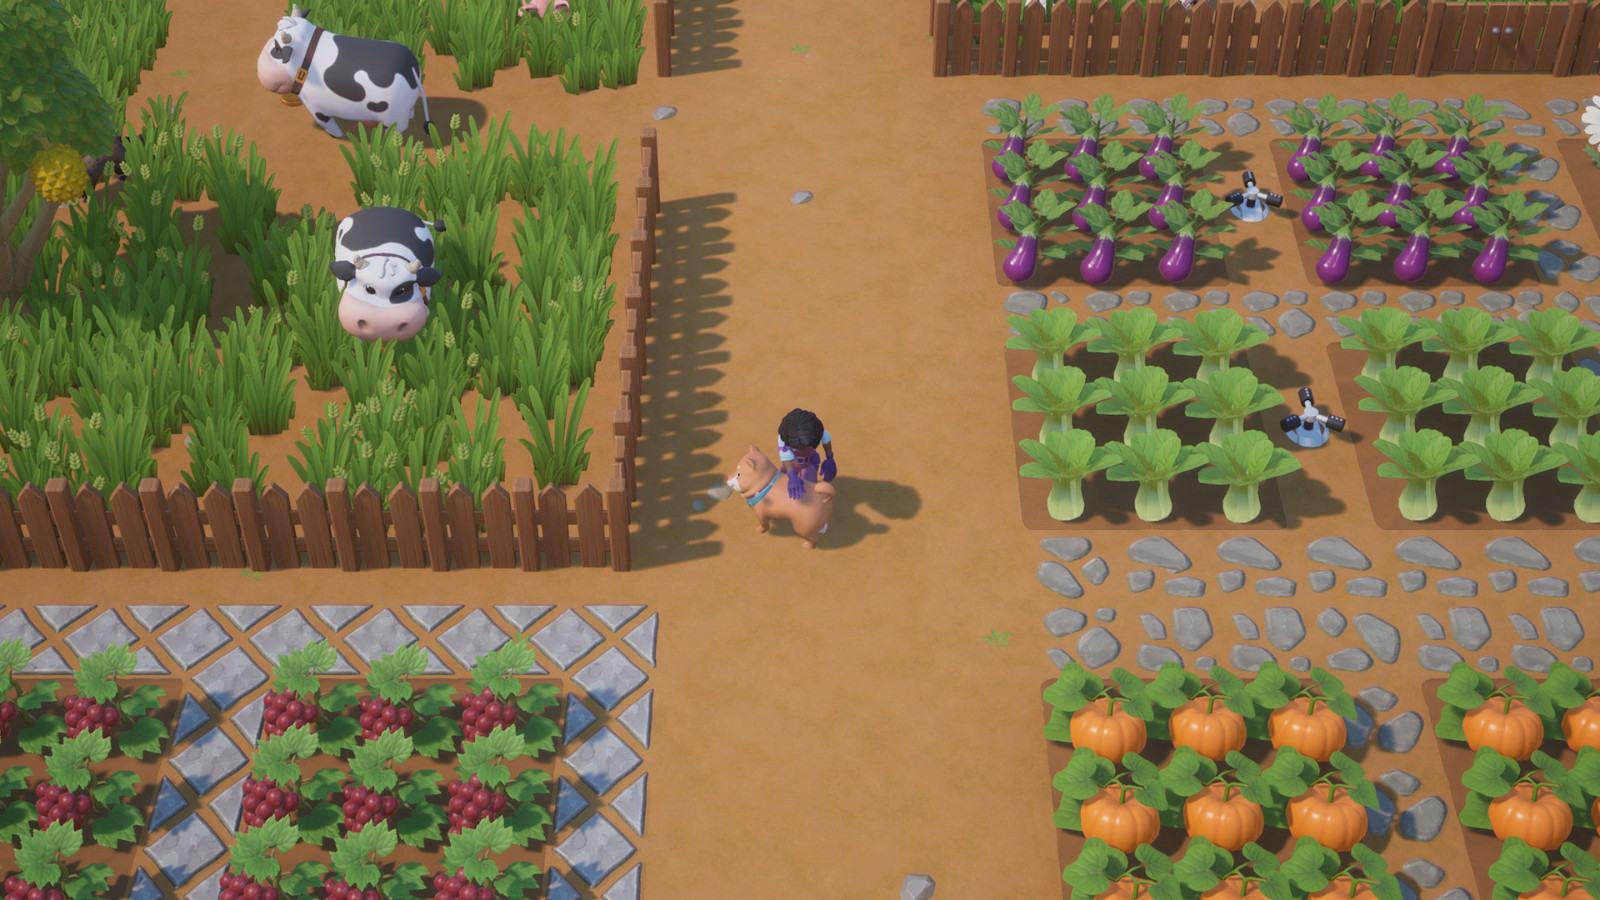 农场休闲模拟游戏《珊瑚岛》公布全新官方封面及发行商预告